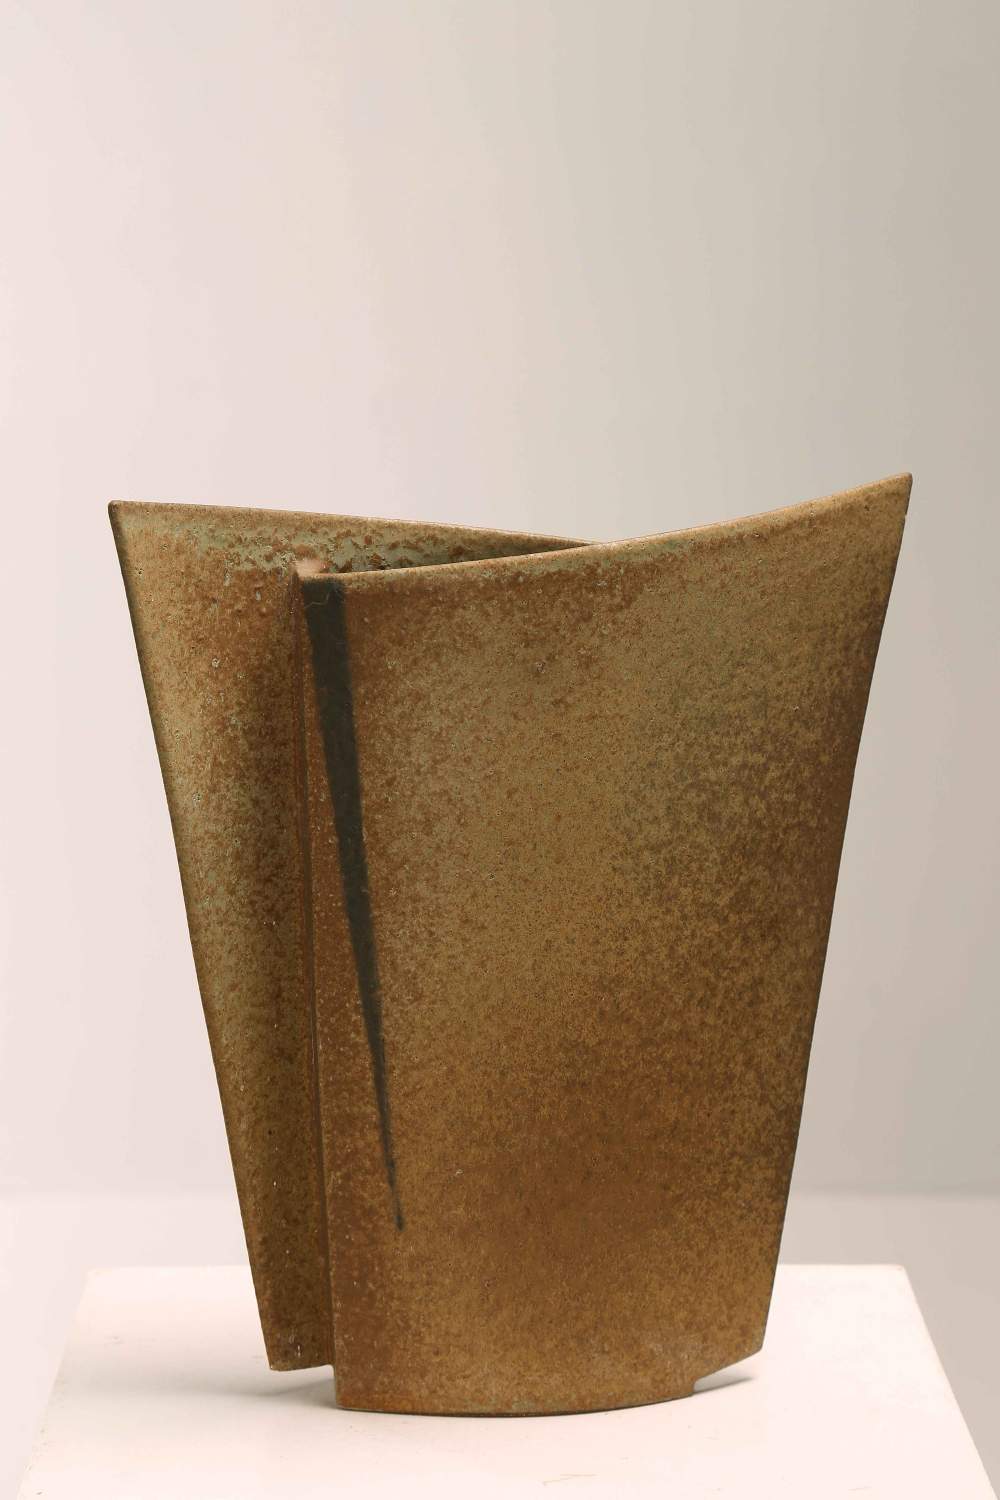 SCHIAVON LUCA
Sculpture vase.
Padua. 1990s.

37,00 x 42,00 x 9,00 cm